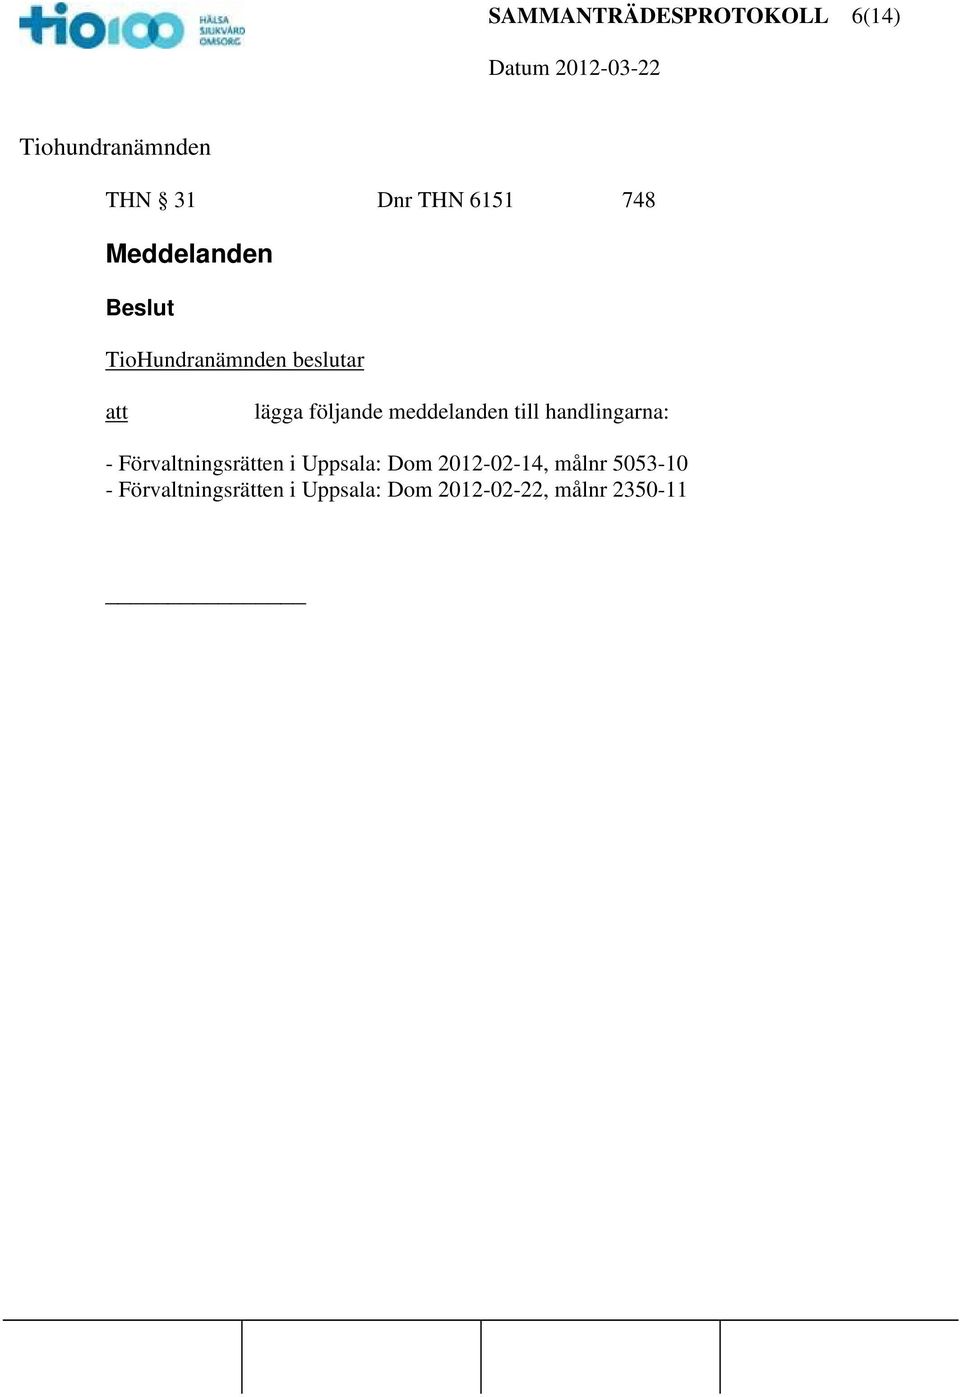 - Förvaltningsrätten i Uppsala: Dom 2012-02-14, målnr